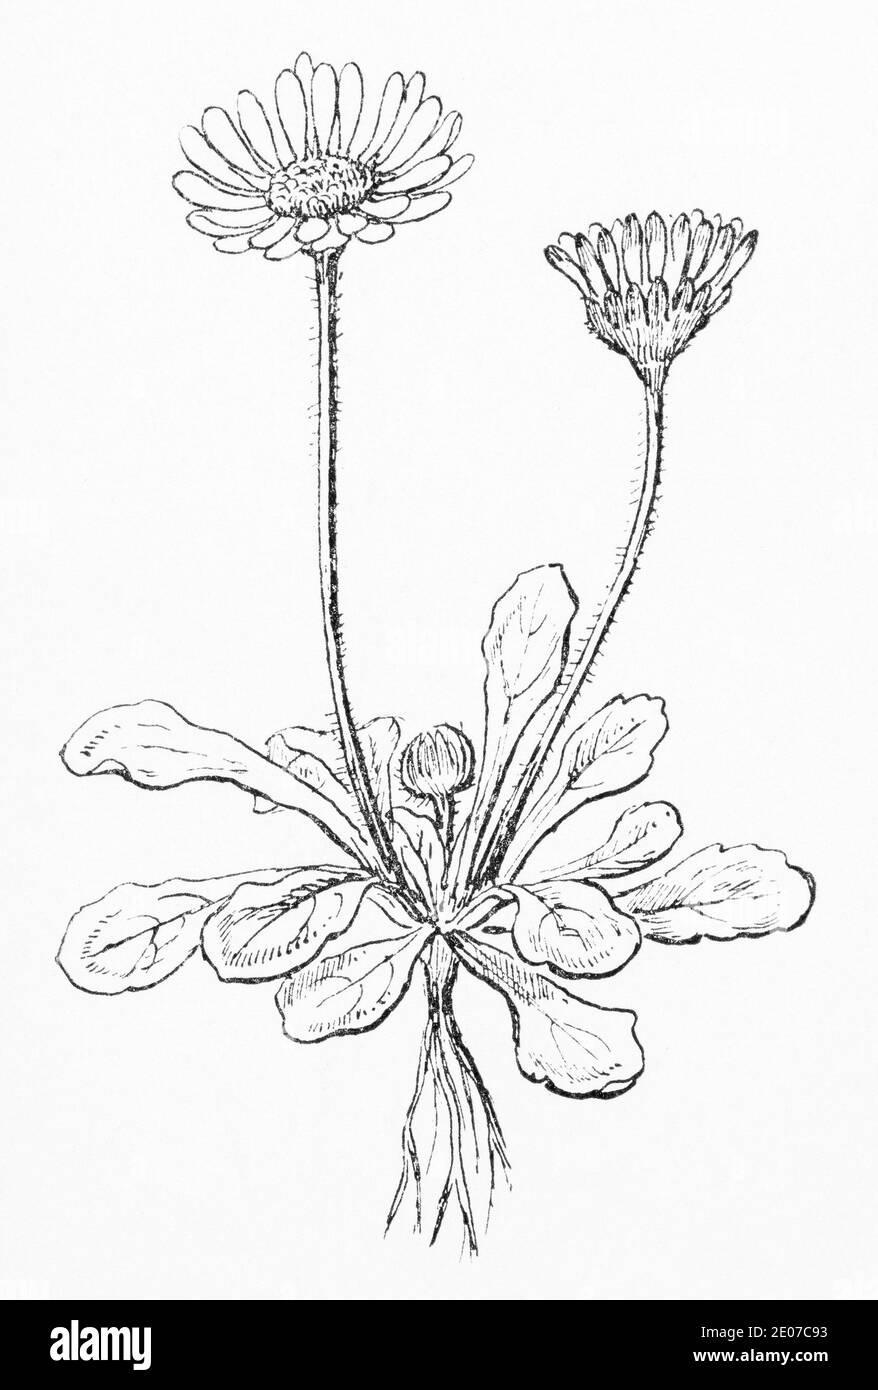 Alte botanische Illustration Gravur von Daisy / Bellis perennis. Traditionelle Heilkräuter Pflanze. Siehe Hinweise Stockfoto